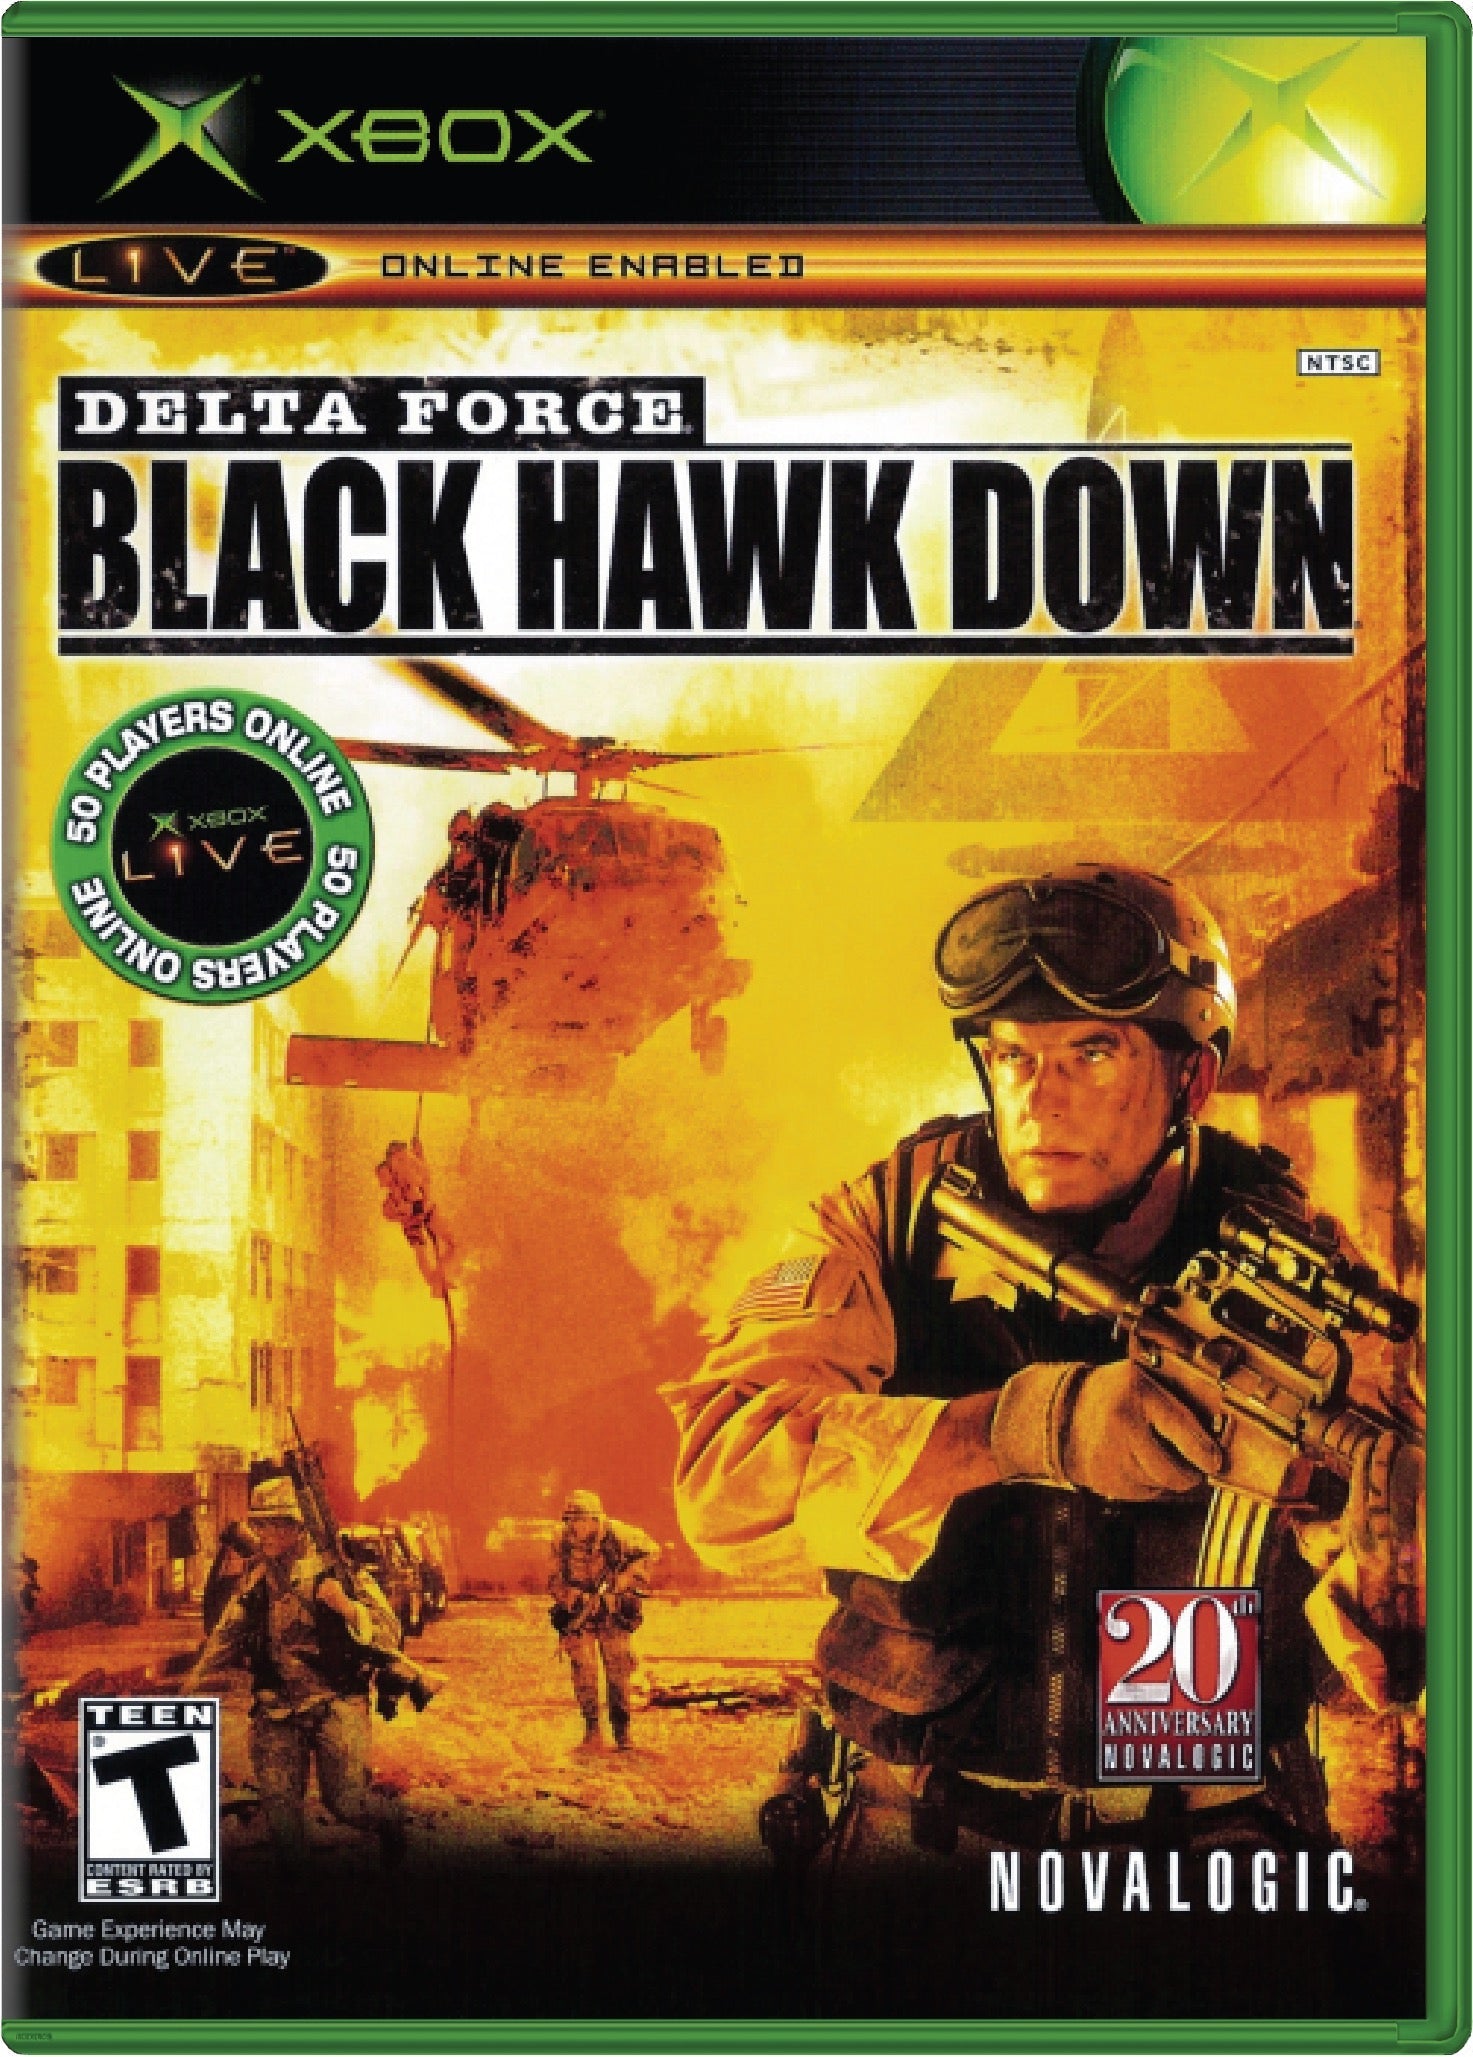 Delta Force Black Hawk Down Cover Art